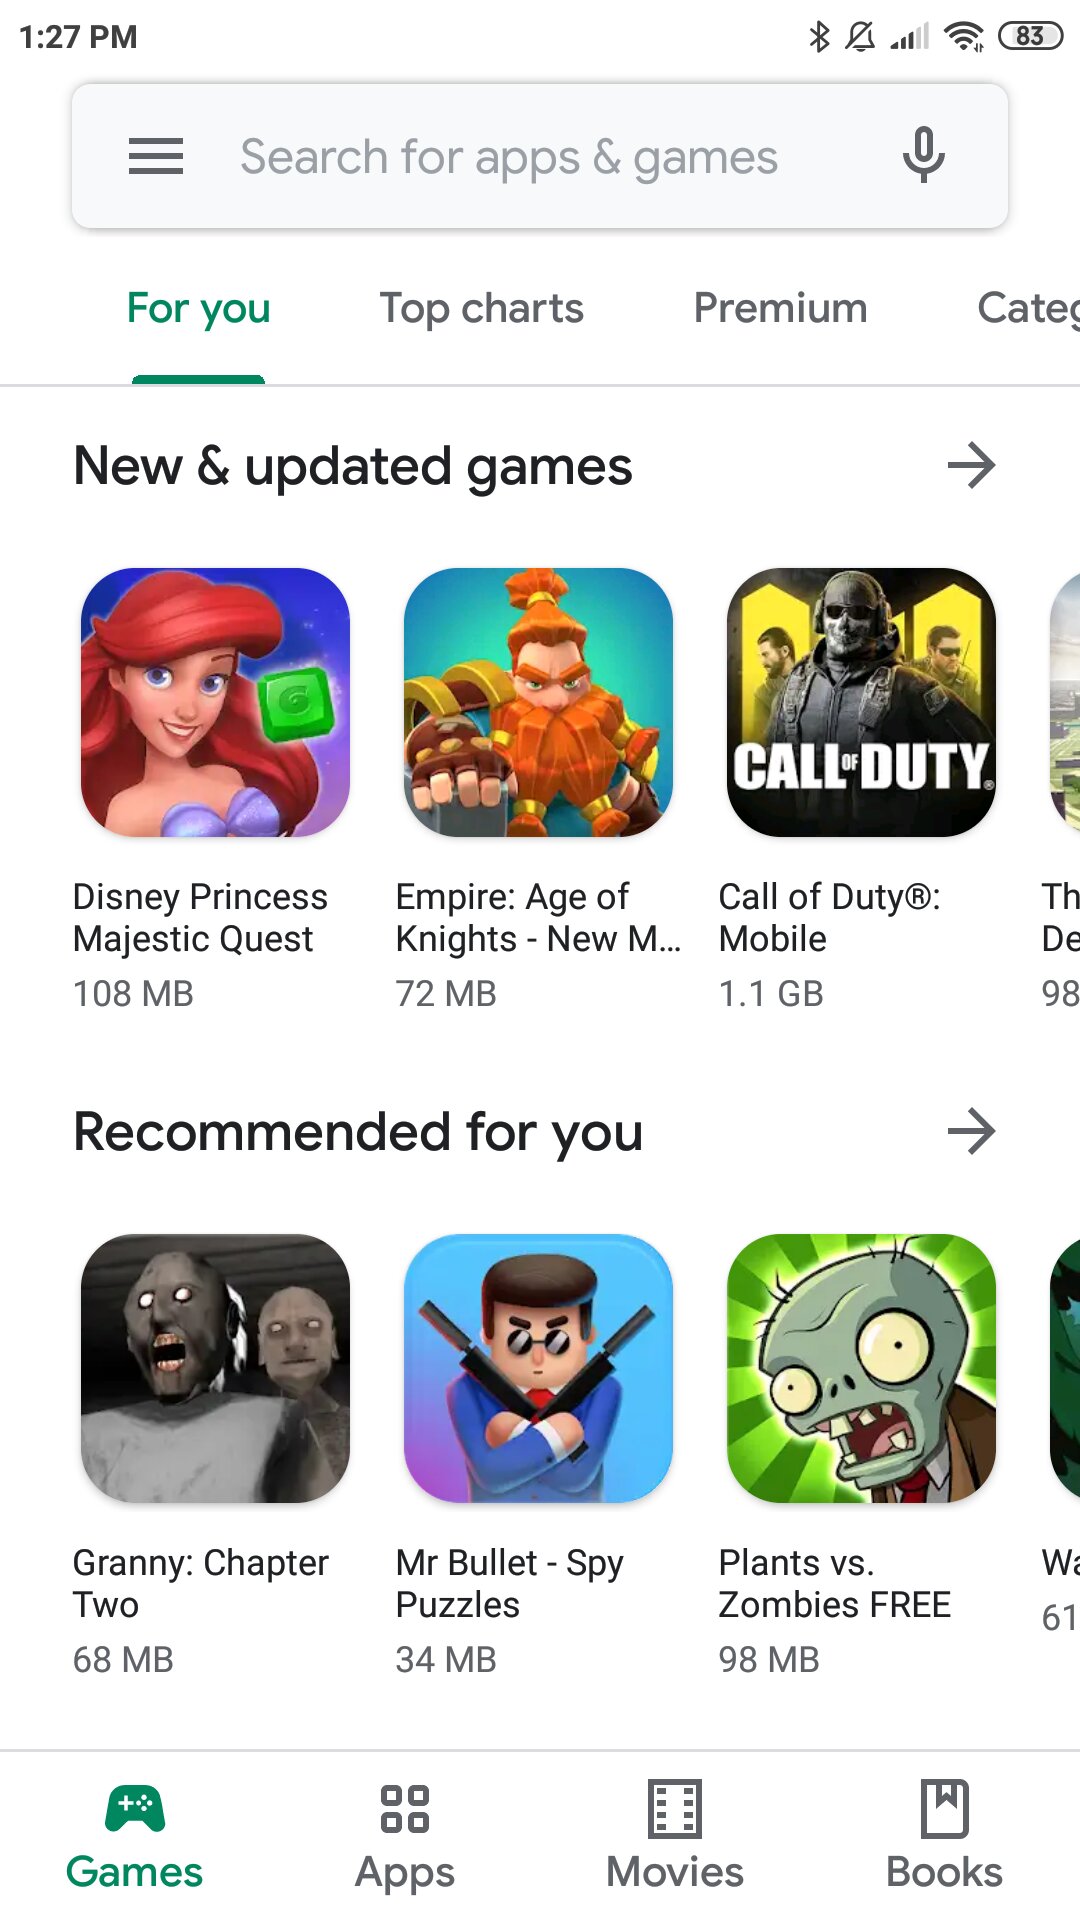 Google Play Store atualizada com a versão 8.7.10 – Download da APK - 4gnews